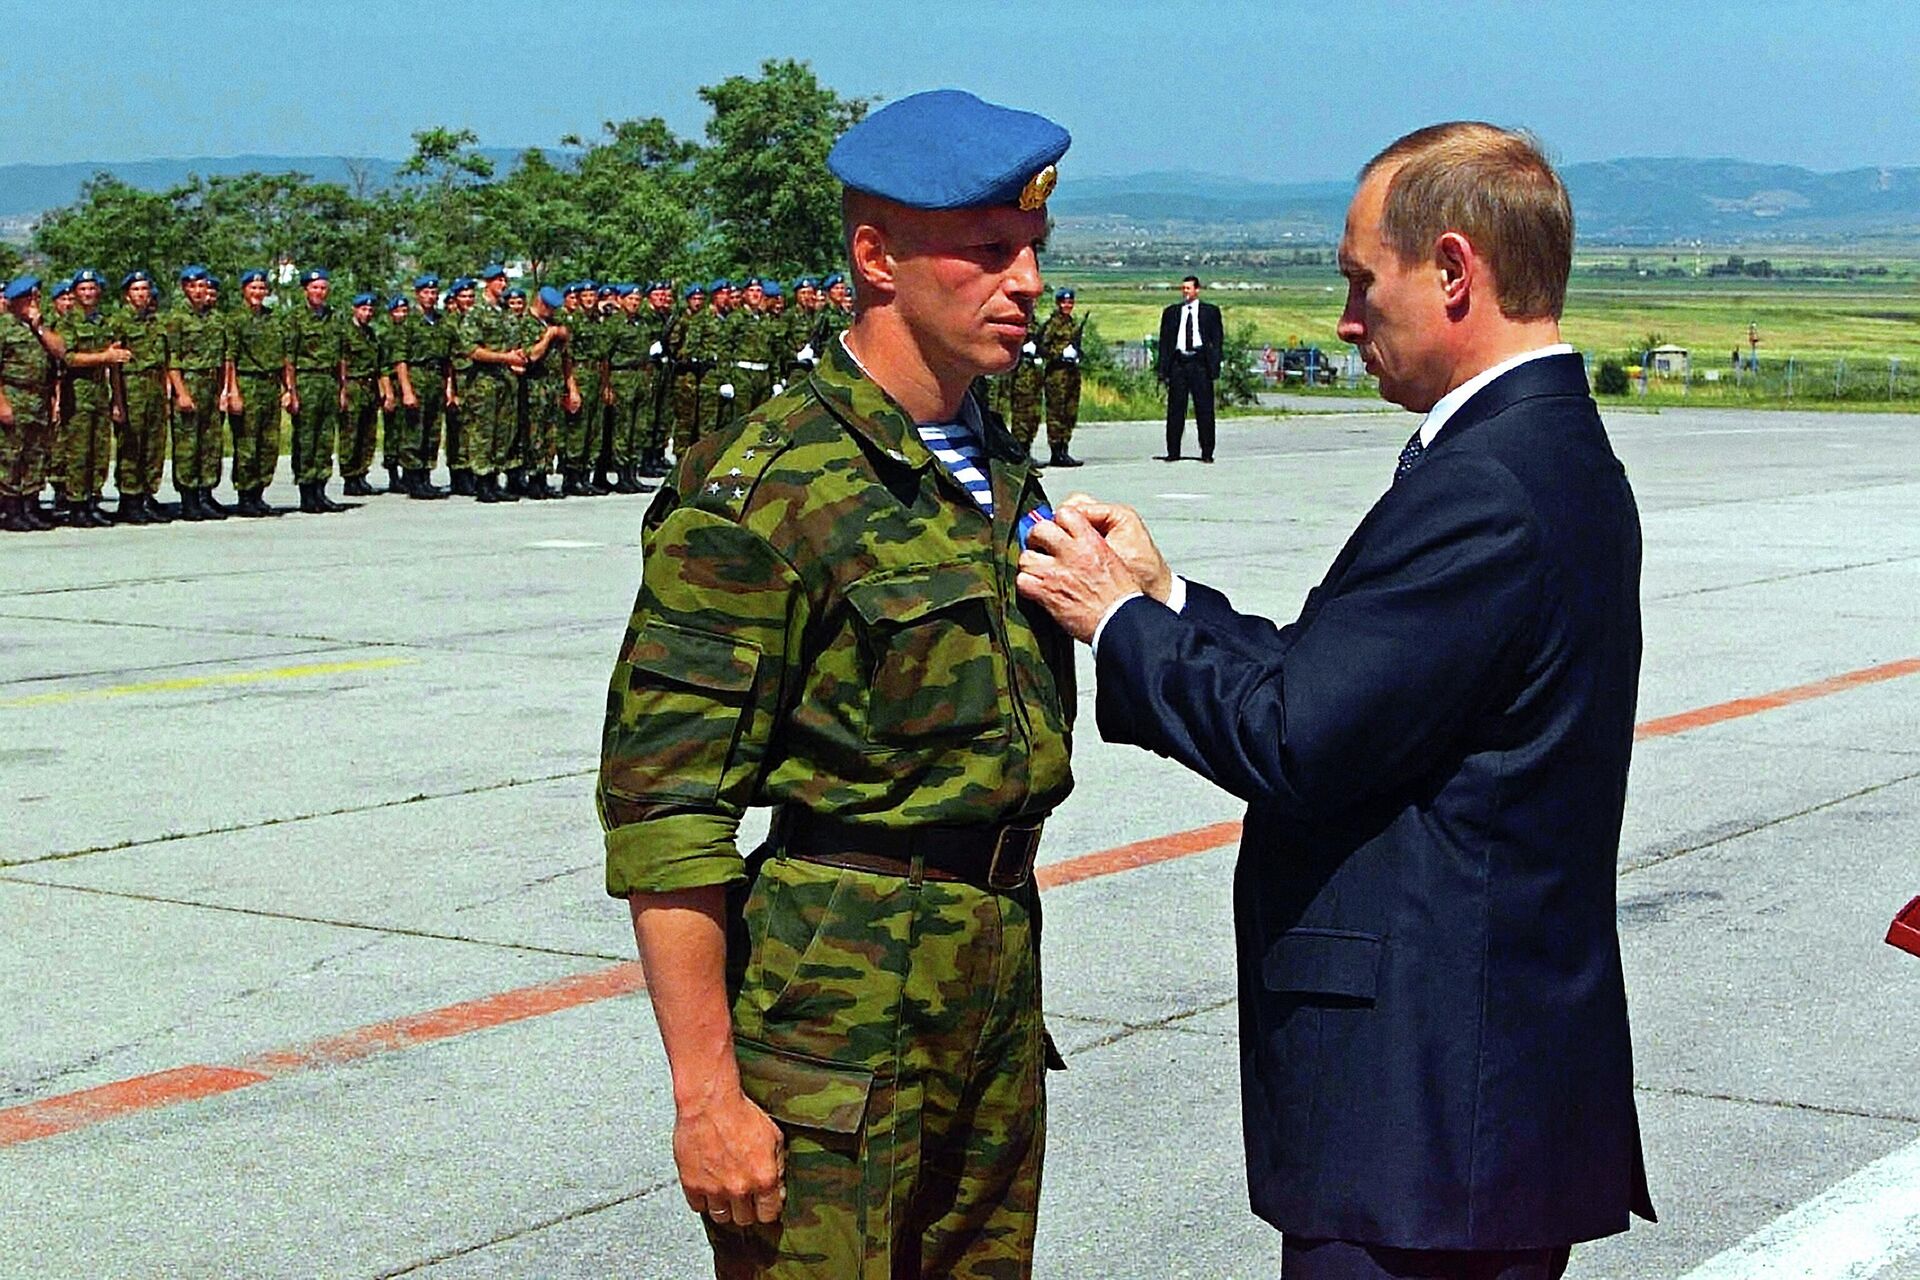 Владимир Путин посетил столицу Югославского края Косово Приштину, где встретился с российским воинским контингентом, находящимся здесь в рамках миротворческой операции ООН, и вручил высокие правительственные награды военнослужащим - Sputnik Latvija, 1920, 11.06.2022